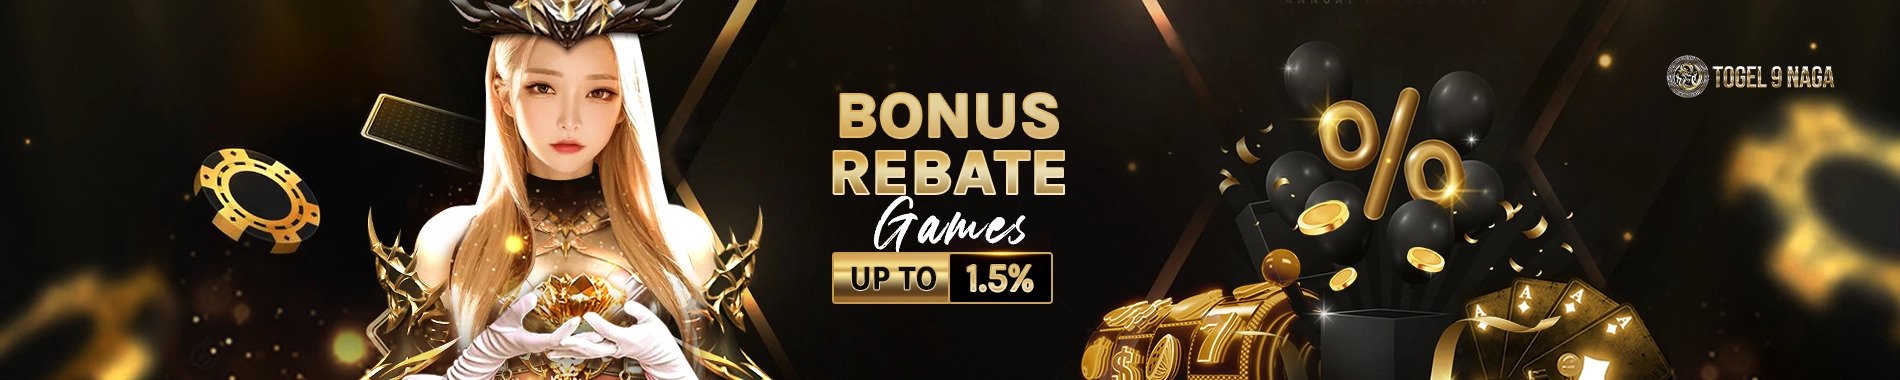 Bonus Rebate Games Up to 1.5% Togel9Naga